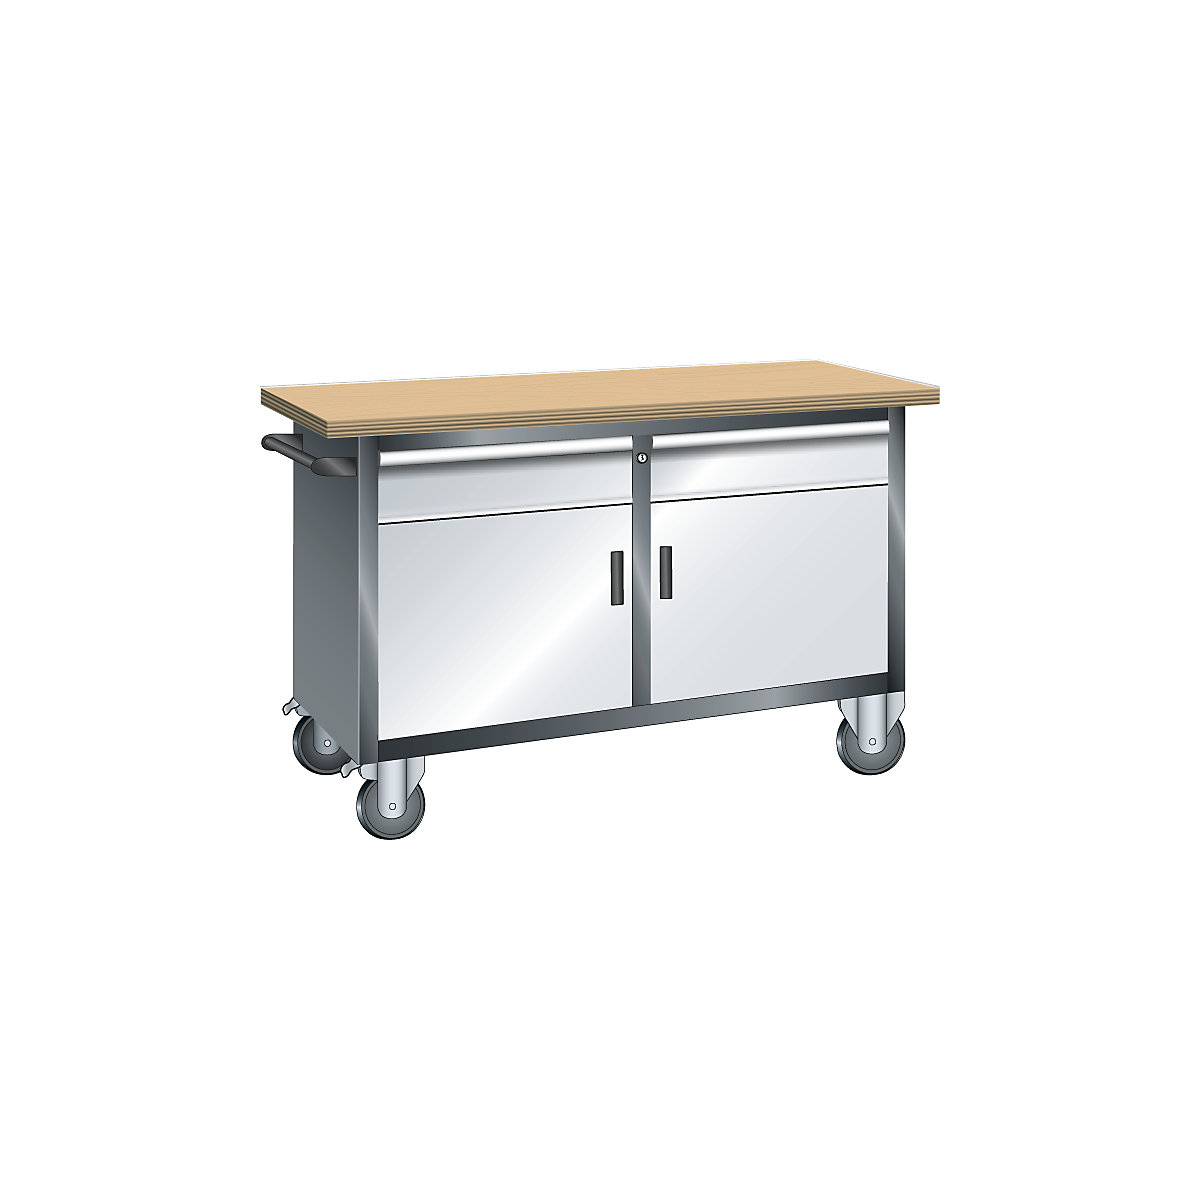 Kompaktowy stół warsztatowy, mobilny – LISTA